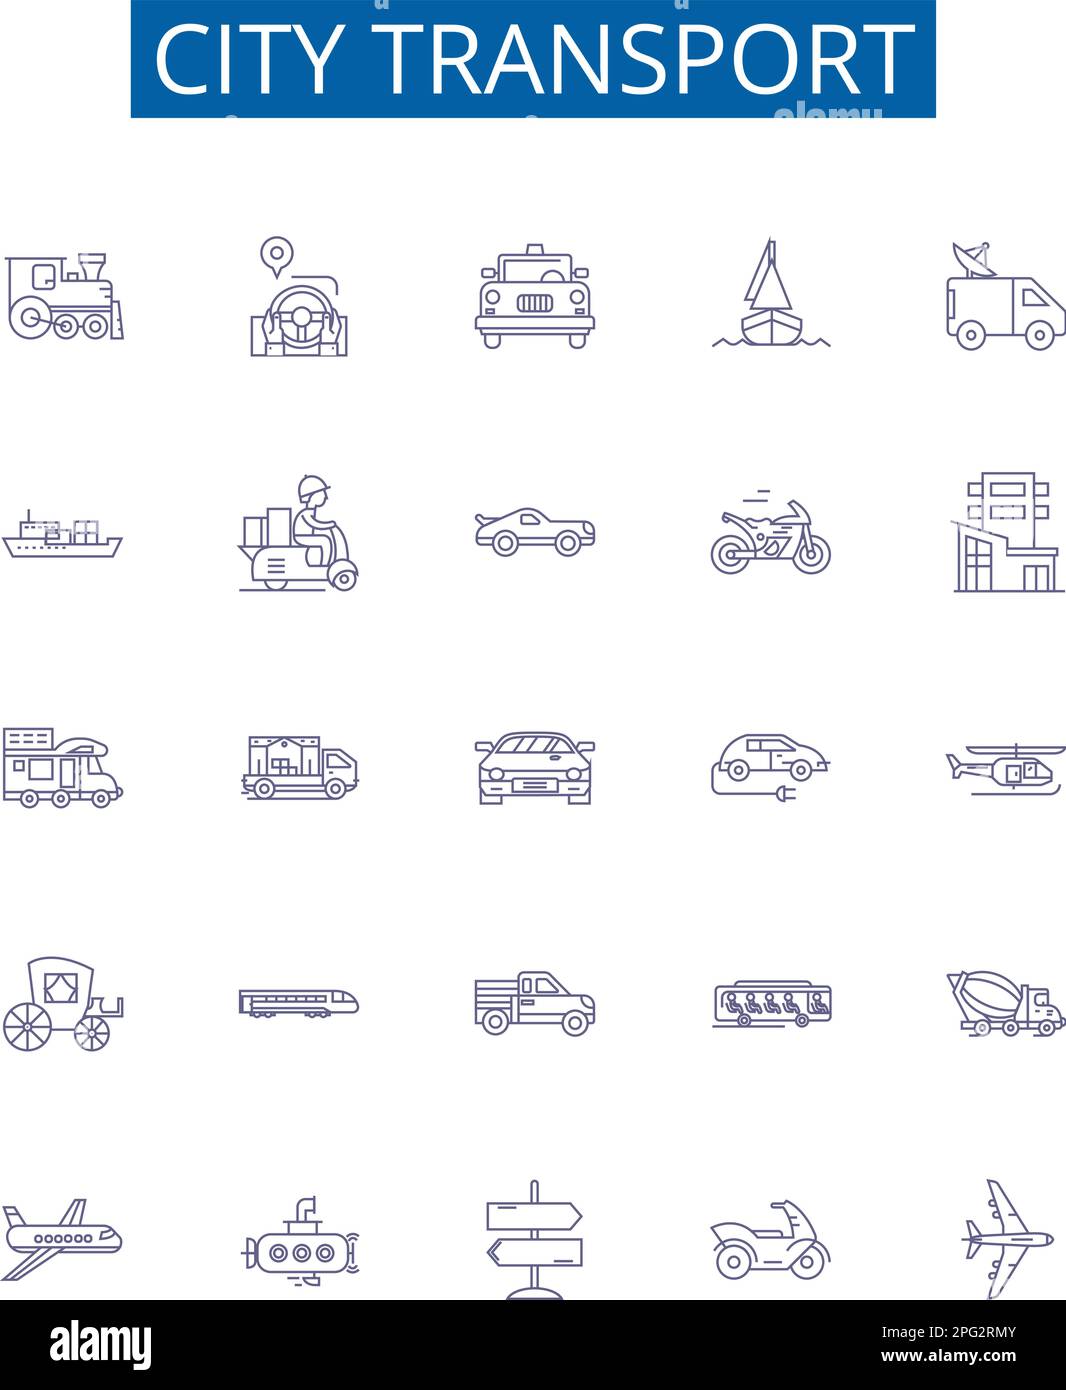 Les panneaux Icons de la ligne de transport de la ville s'affichent. Collection design de urbain, transport, bus, métro, Metro, Vecteur de concept automobile, vélo, taxi Illustration de Vecteur